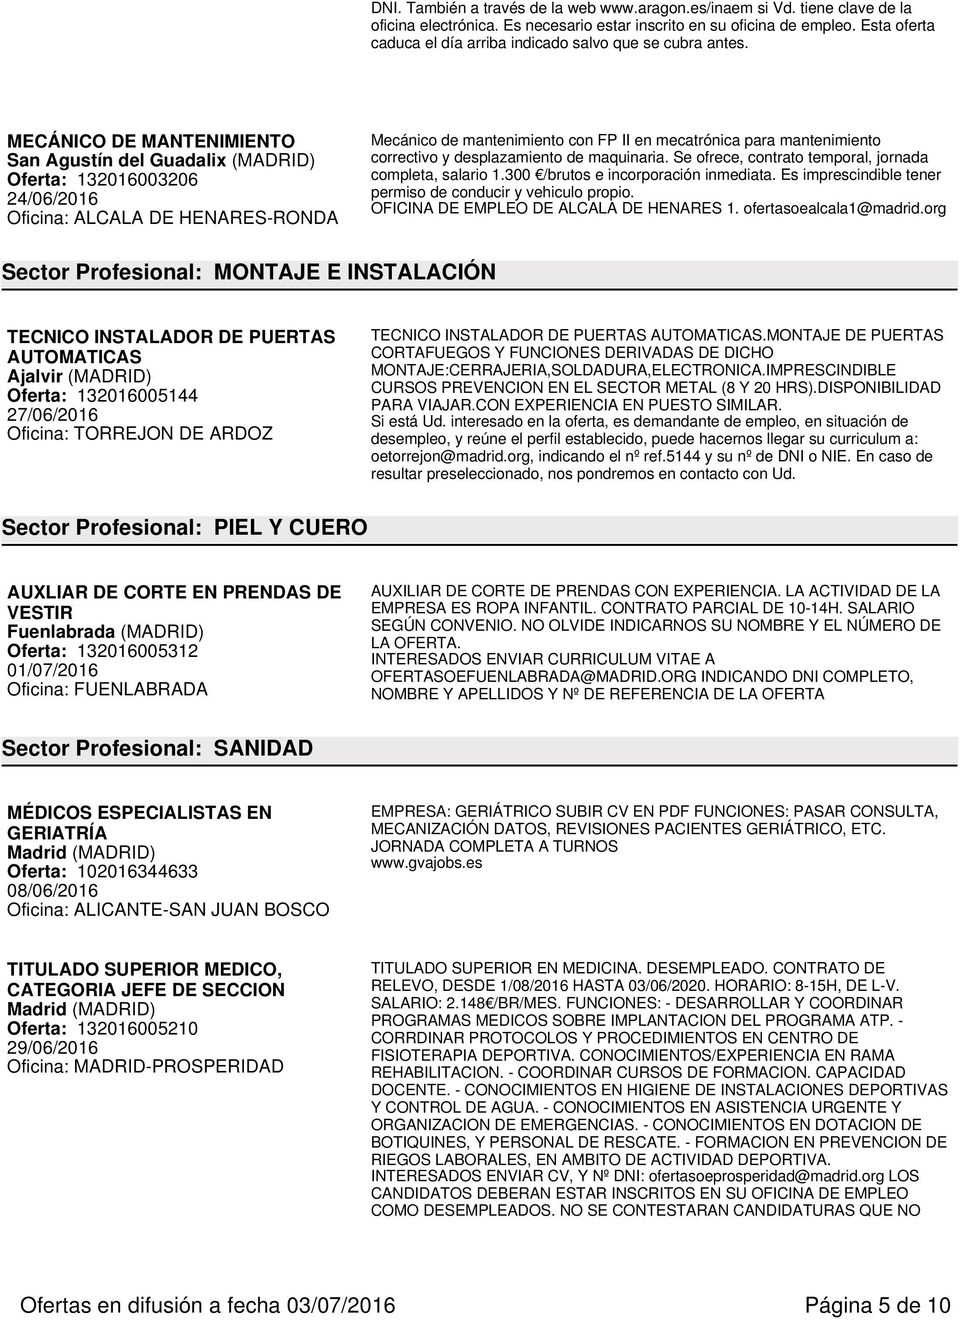 MECÁNICO DE MANTENIMIENTO San Agustín del Guadalix (MADRID) Oferta: 132016003206 Oficina: ALCALA DE HENARES-RONDA Mecánico de mantenimiento con FP II en mecatrónica para mantenimiento correctivo y